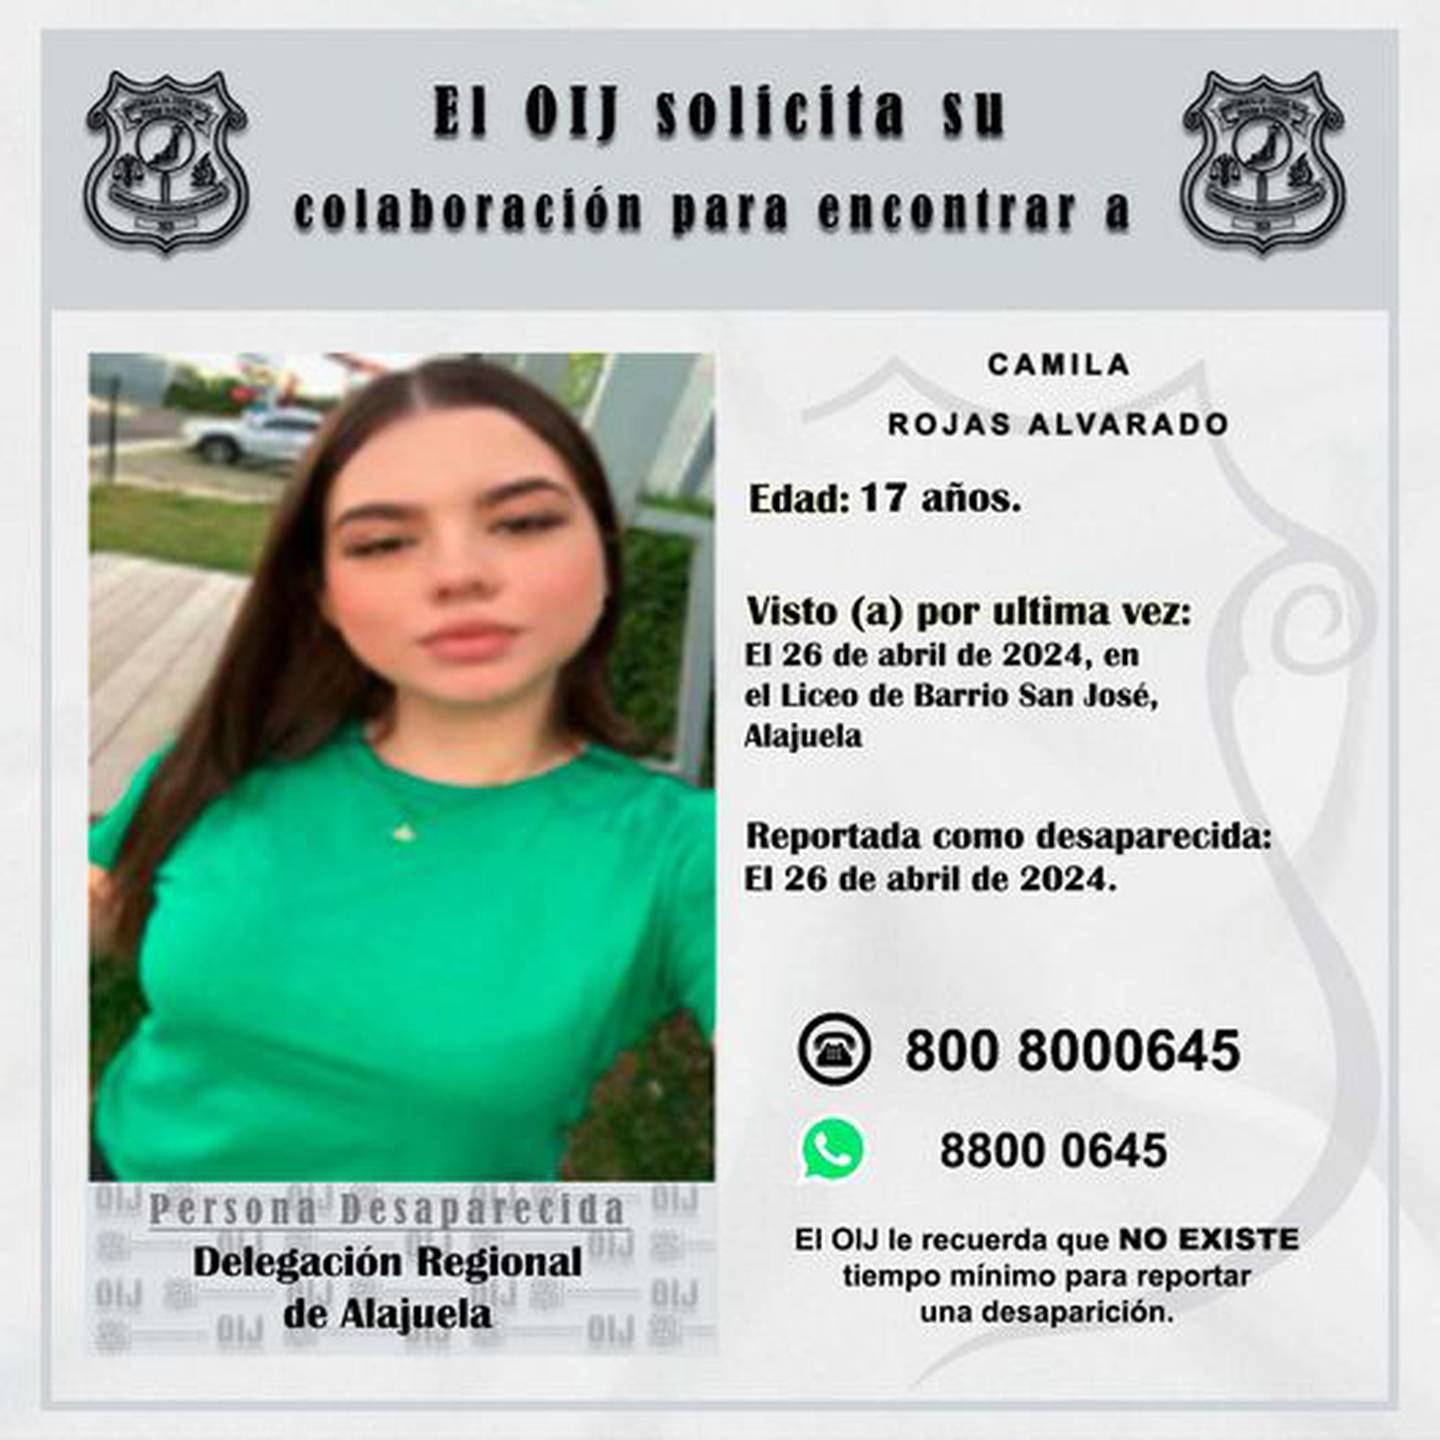 Camila Rojas de 17 años está desaparecida